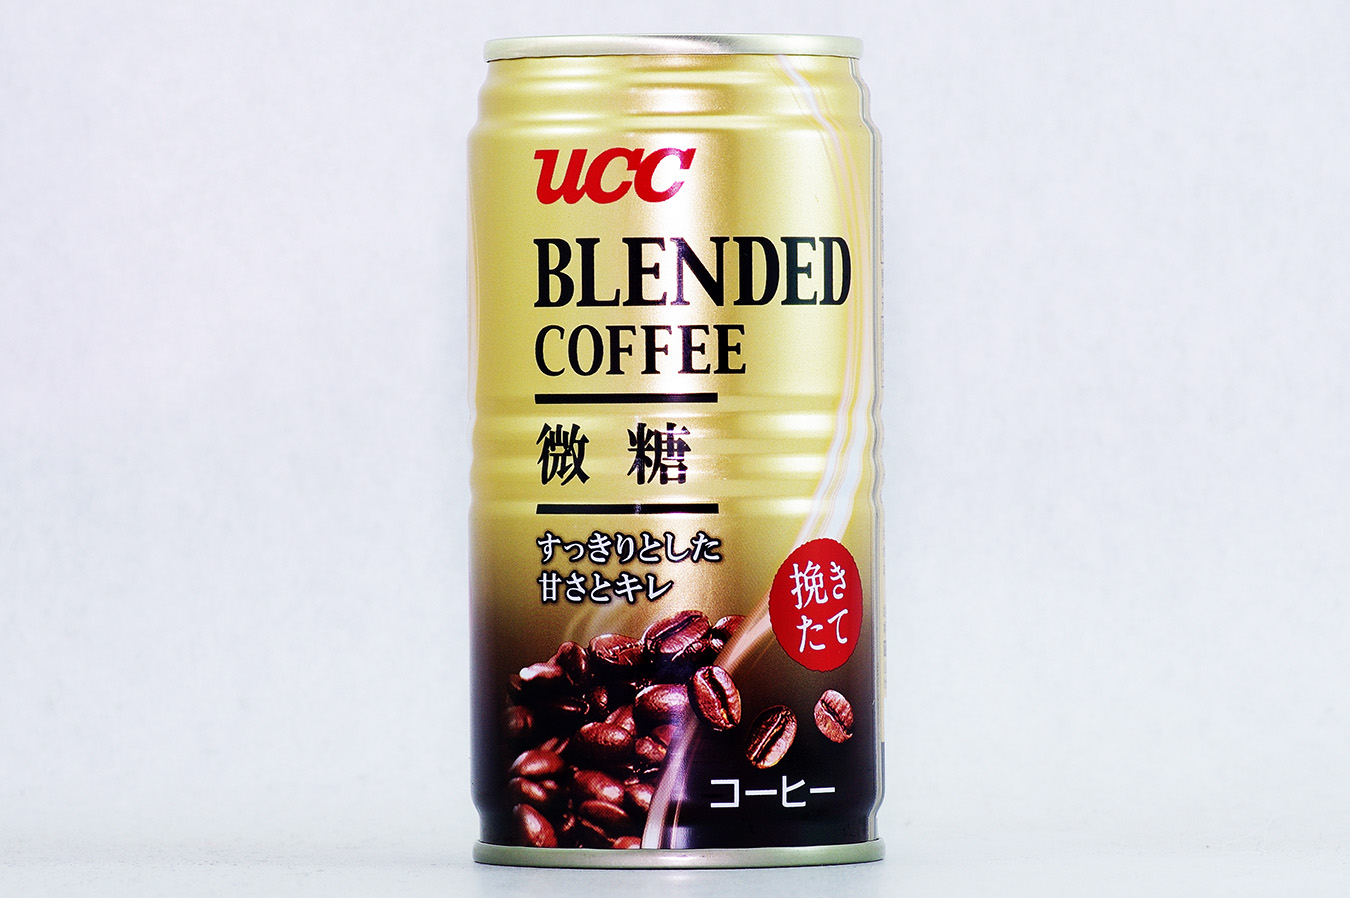 UCC ブレンドコーヒー 微糖 2016年10月